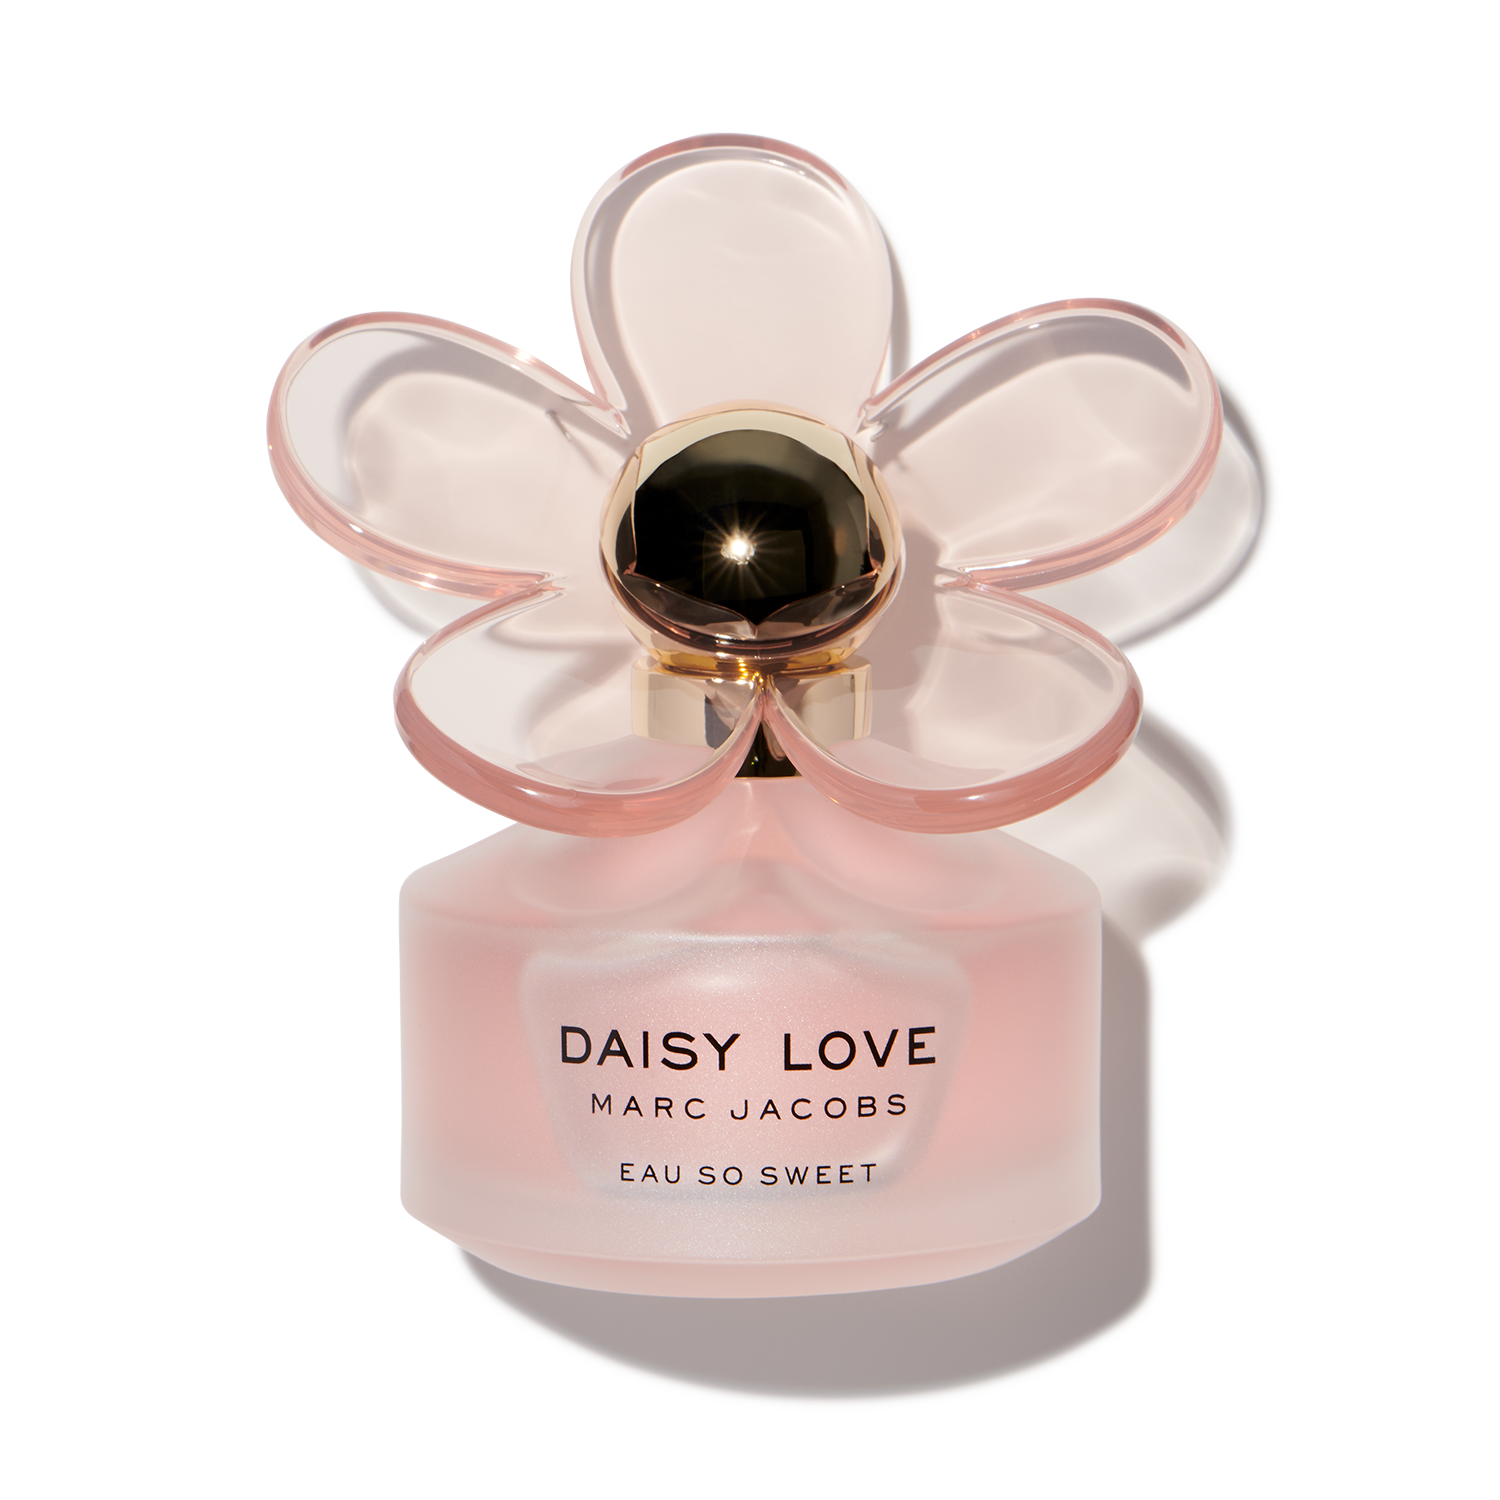 Marc Jacobs Daisy Love Eau So Sweet for $7.95